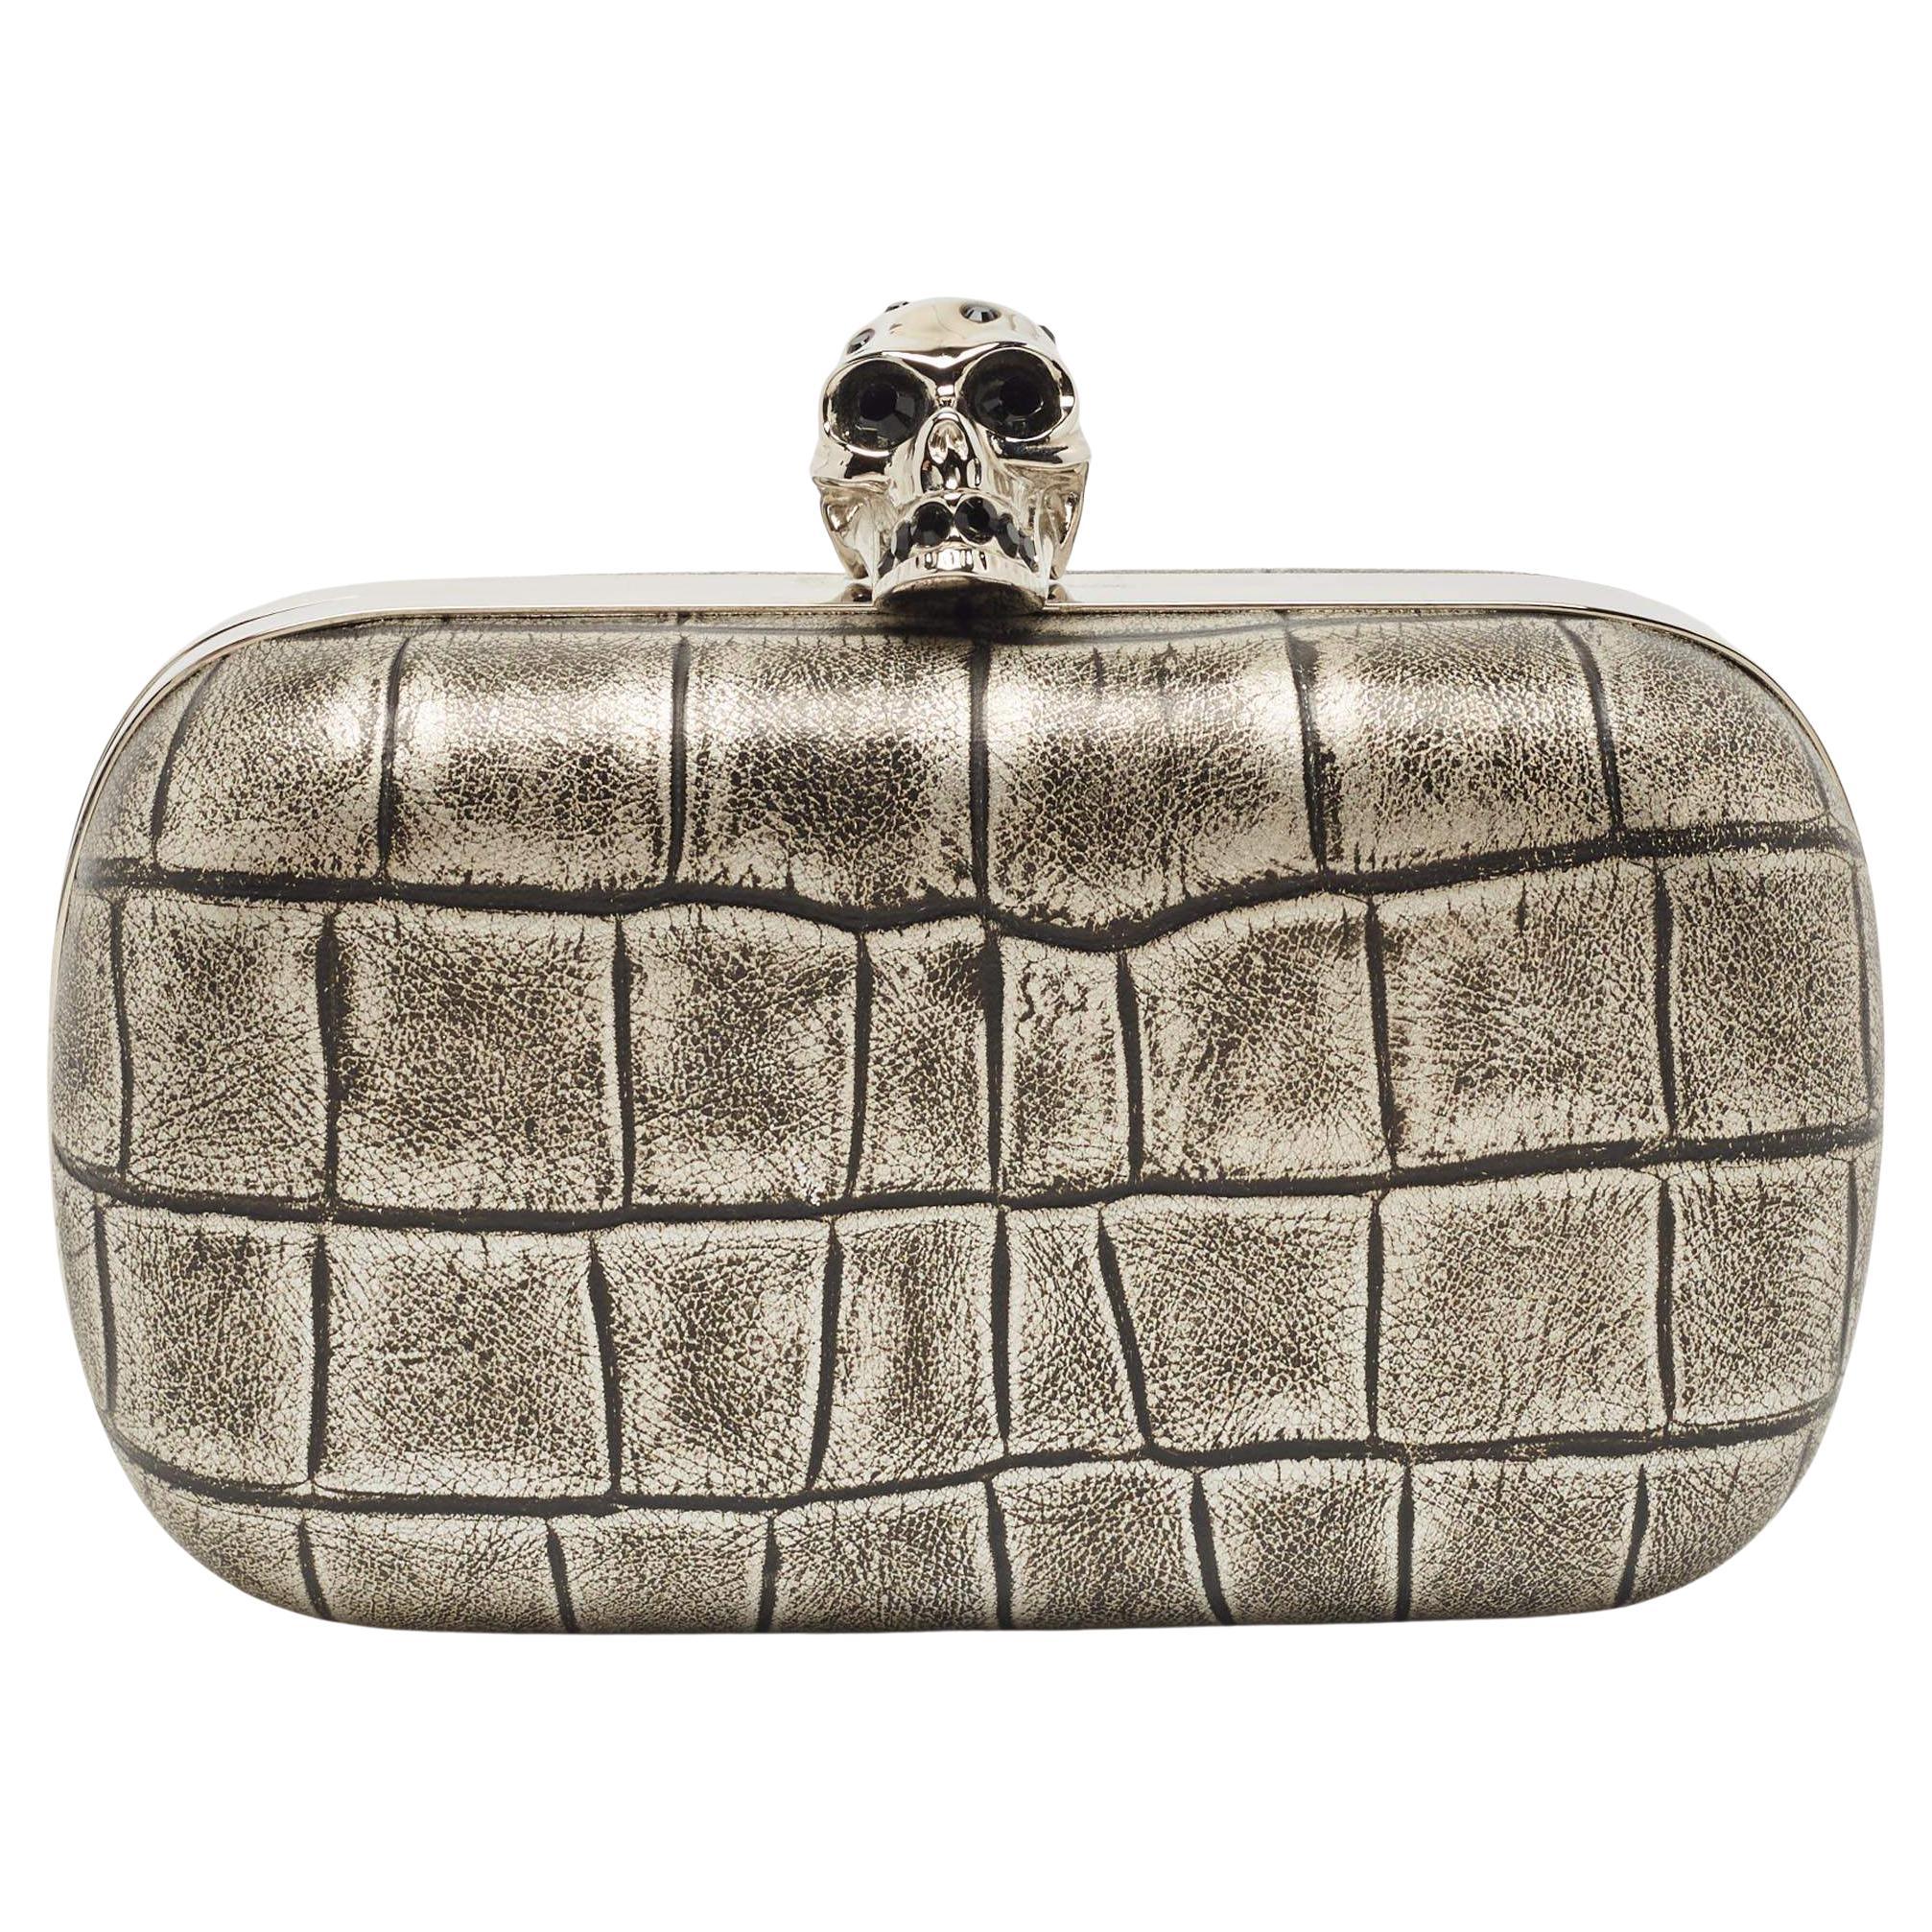 Alexander McQueen Grey/Black Croc Embossed Leather Skull Box Clutch